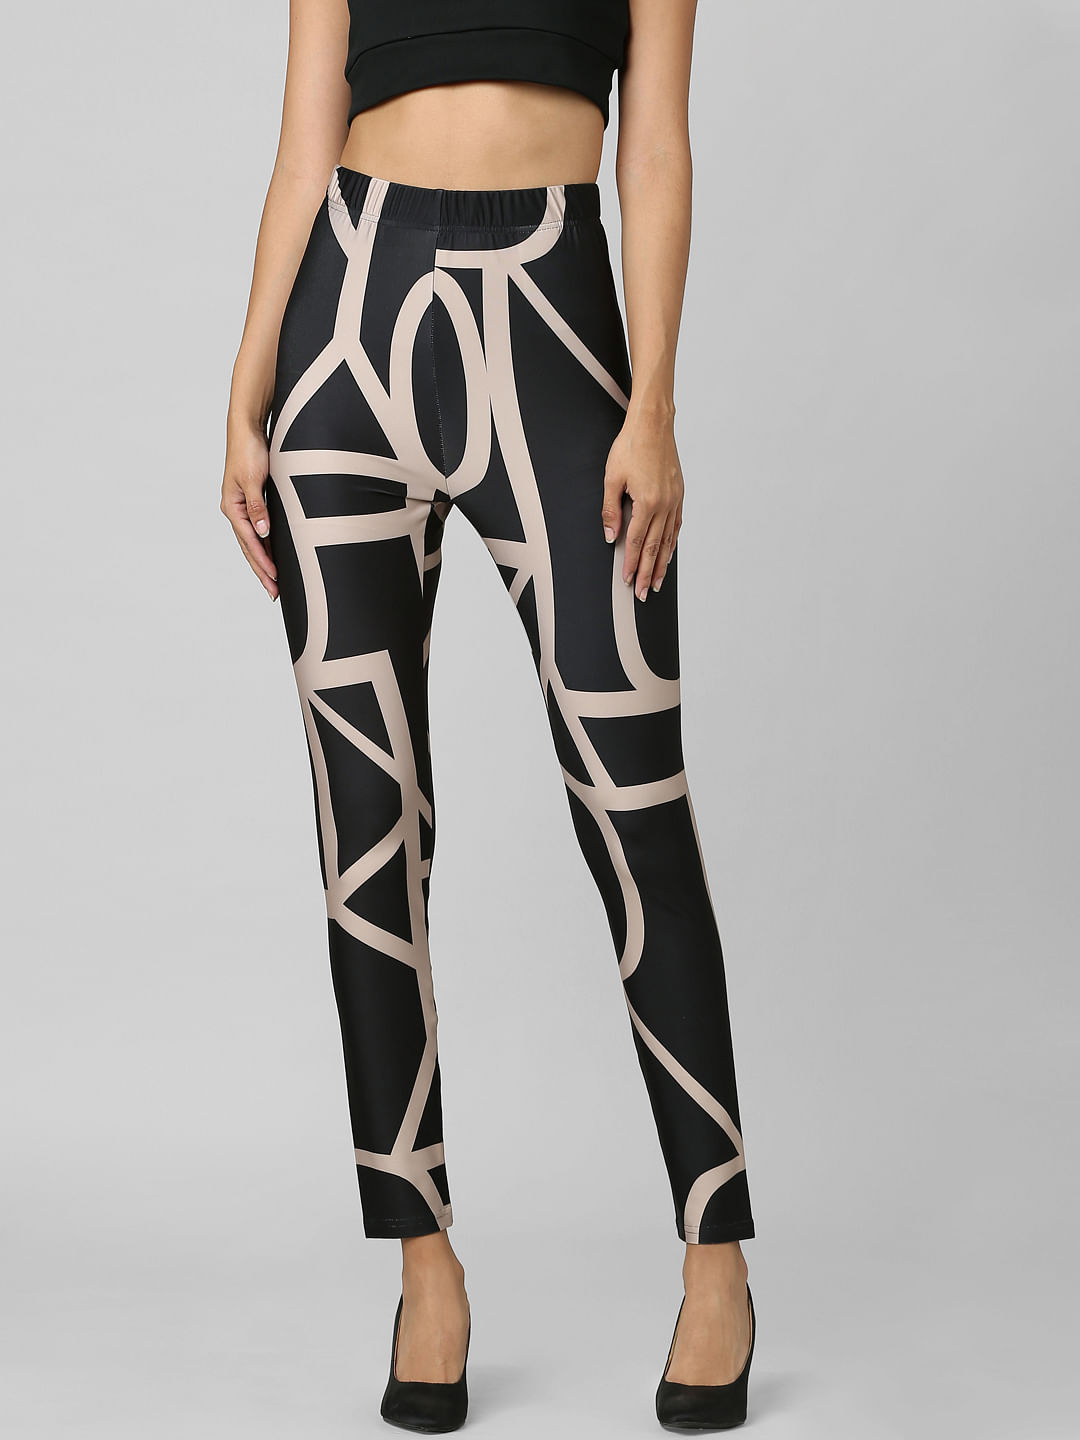 Buy DressBerry Women Black & White Seamless Fleece Leopard Printed Leggings  - Leggings for Women 407111 | Myntra